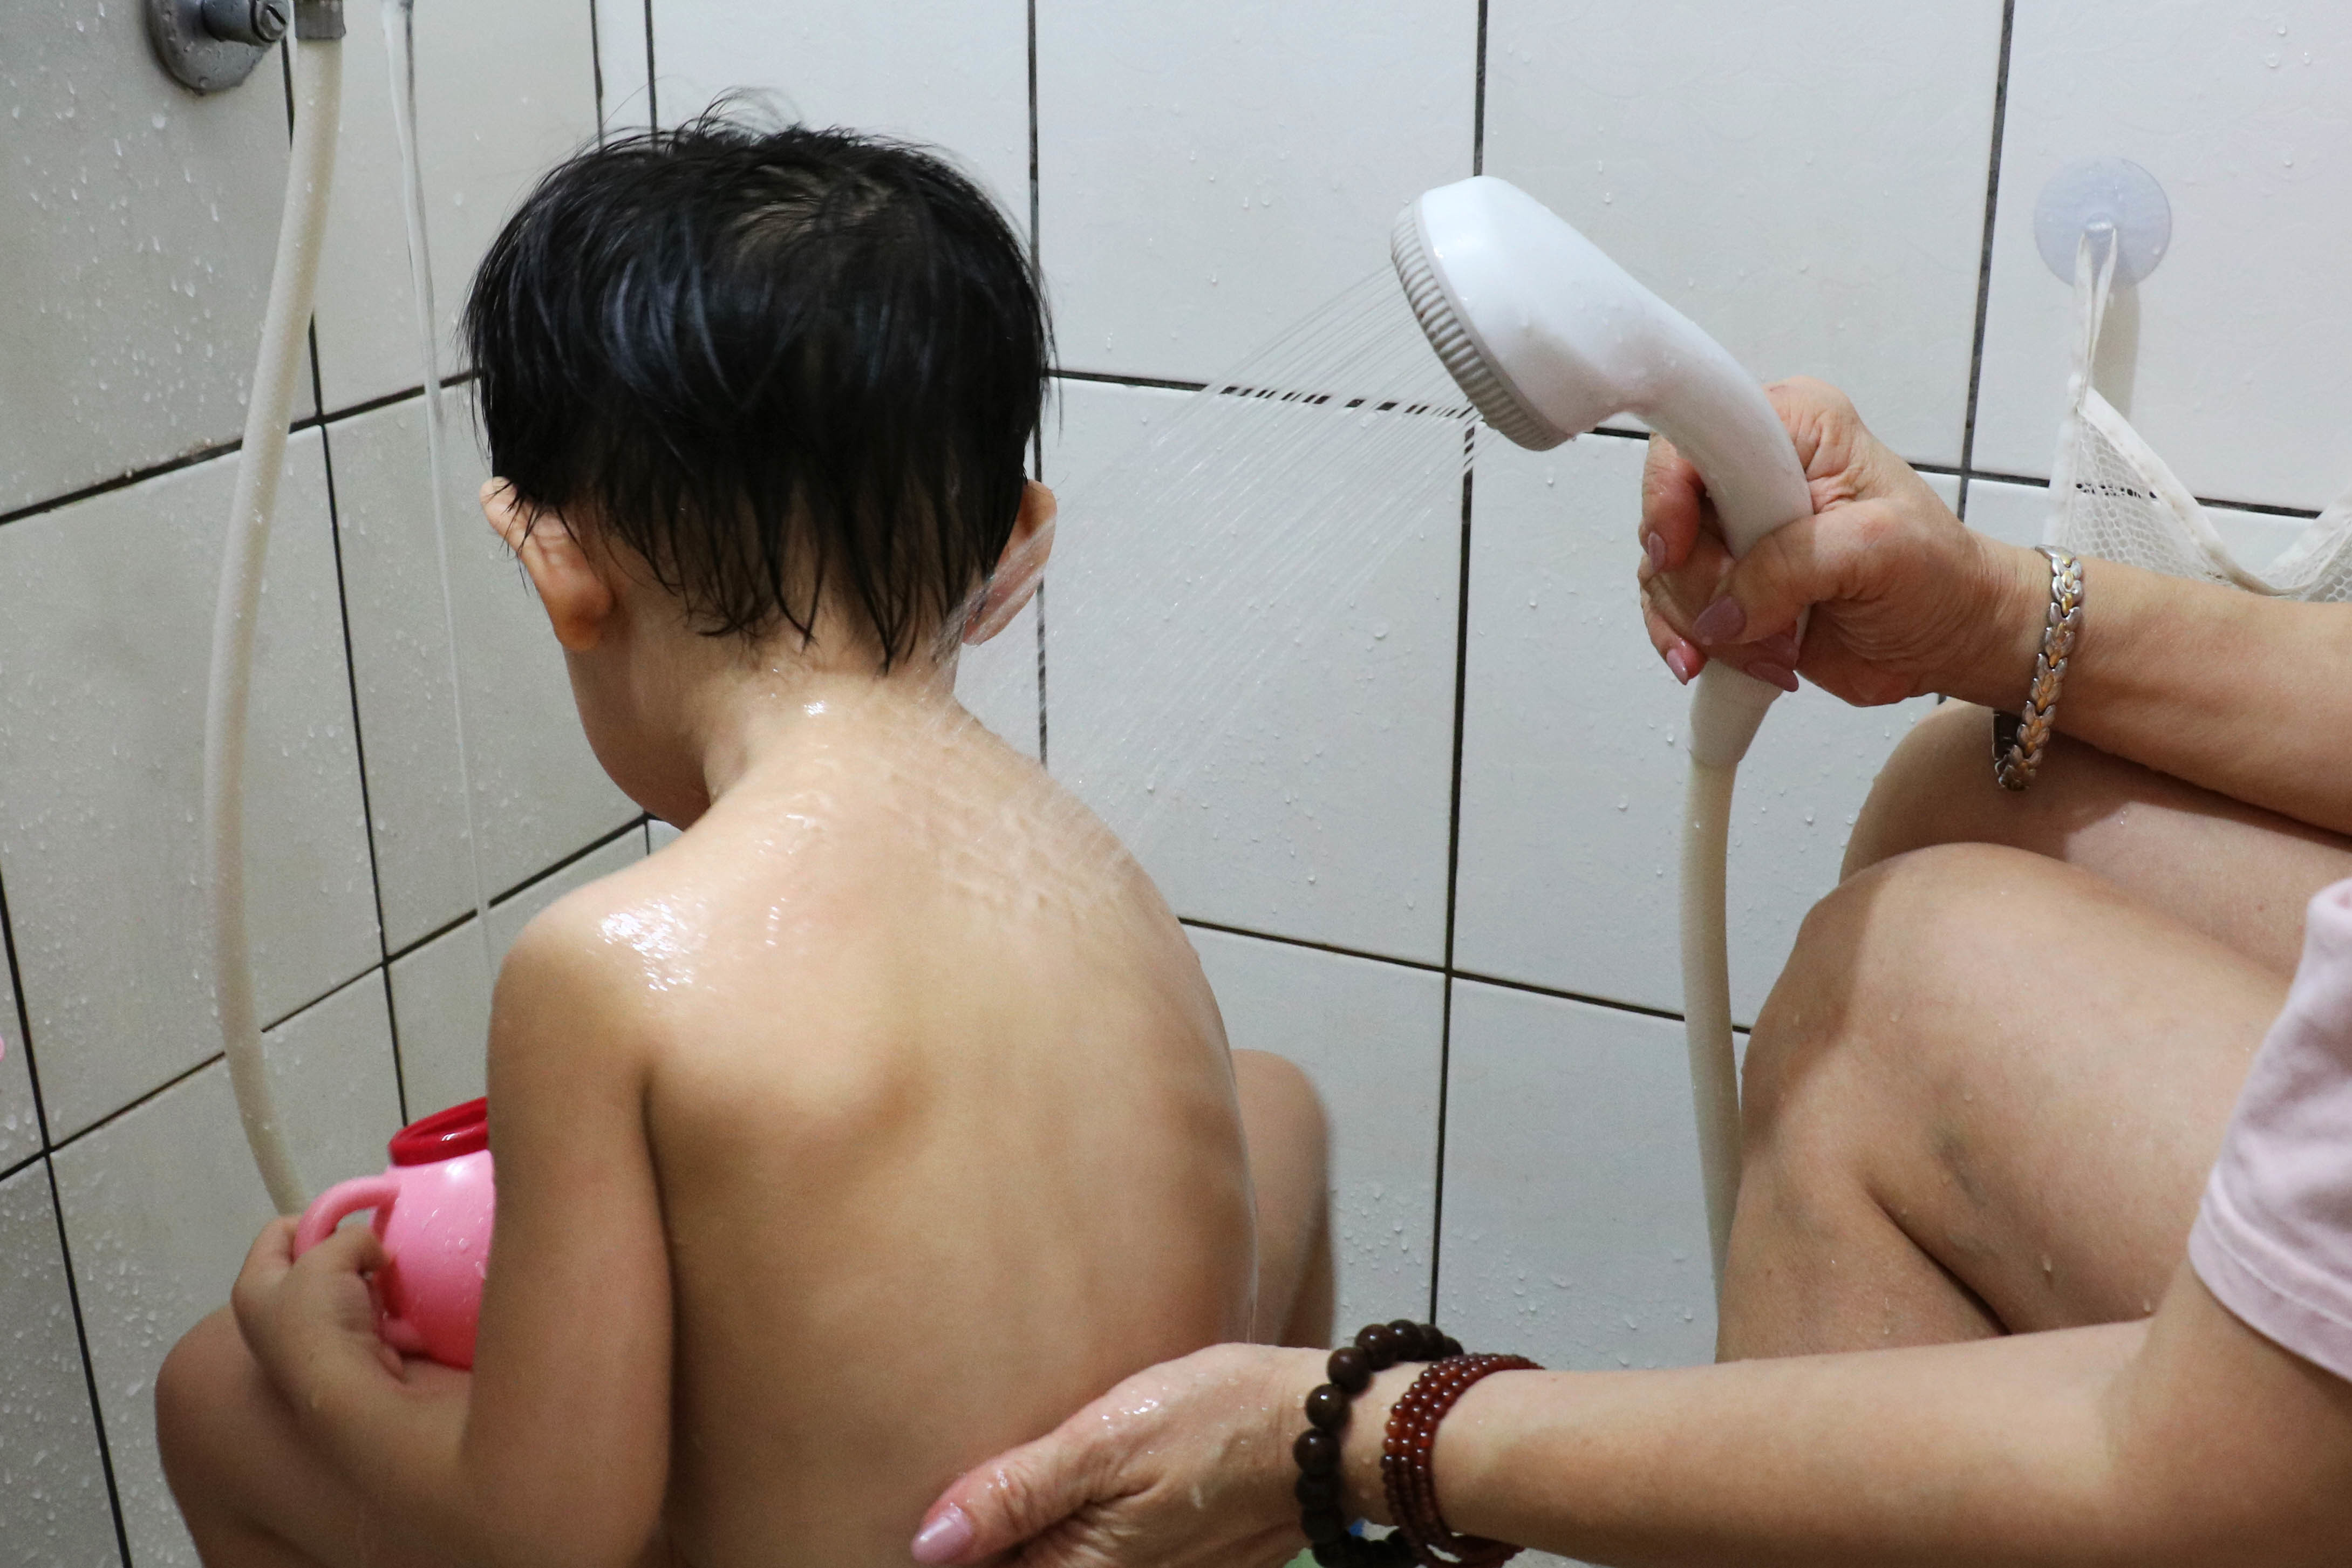 聲控蓮蓬頭調節出水模式 　助幼兒及身障沐浴 | 華視新聞